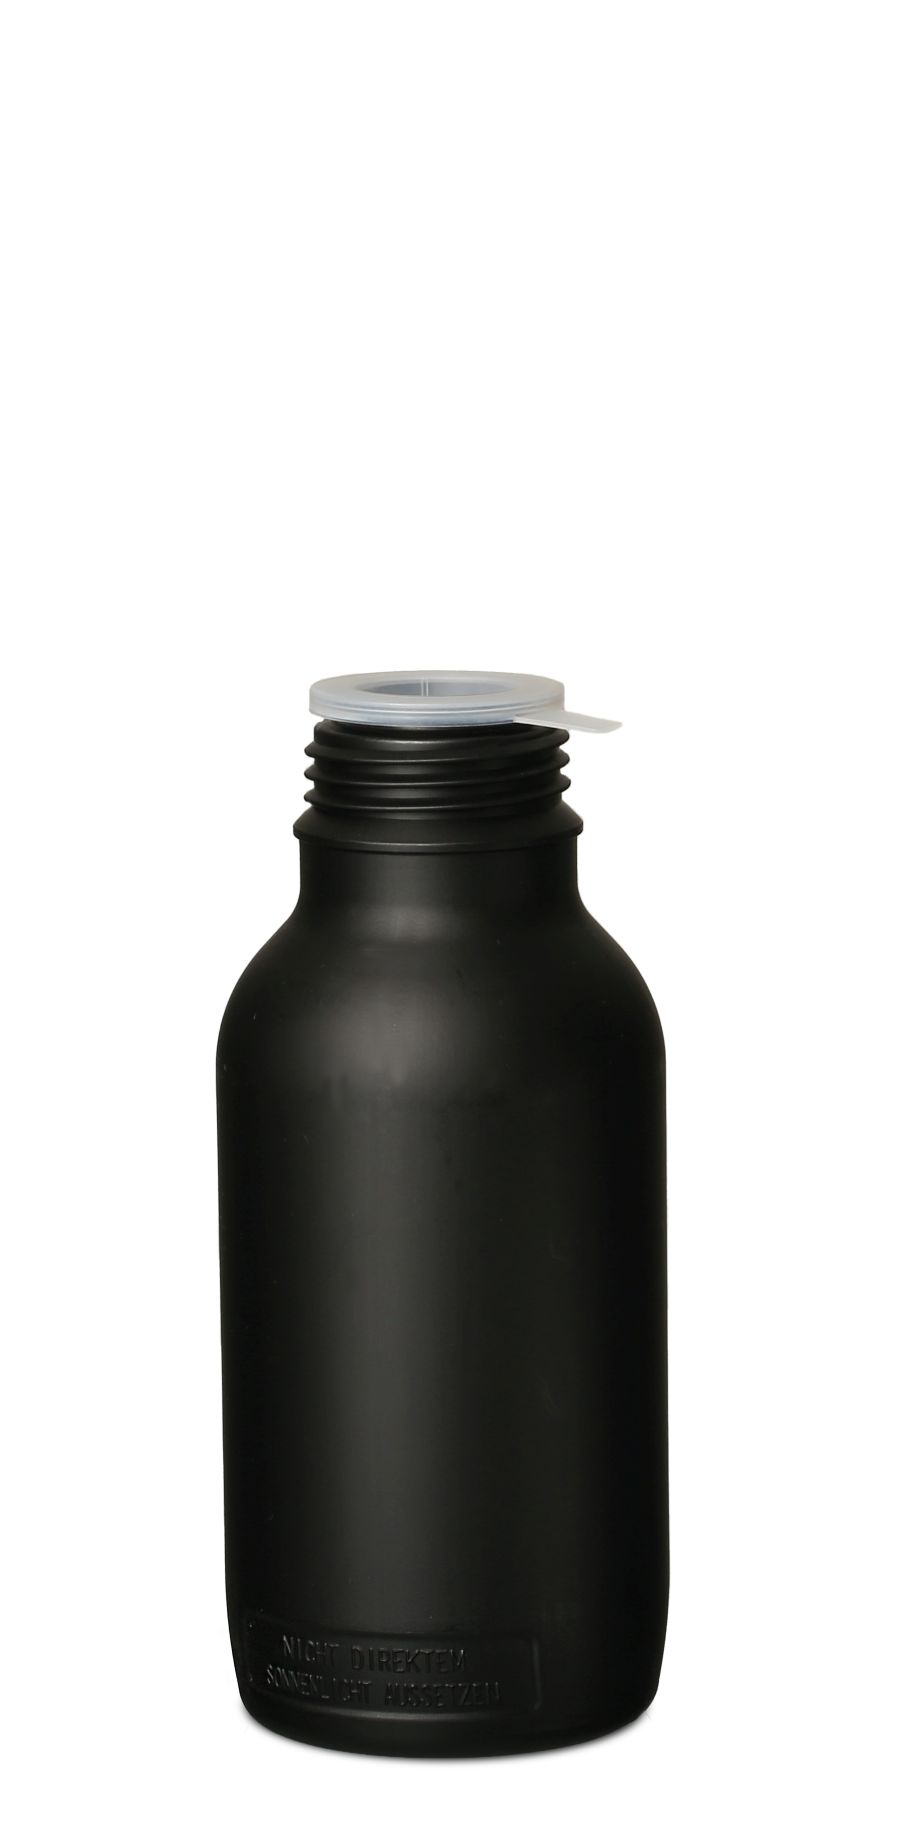 500 ml bottle series chemical bottle